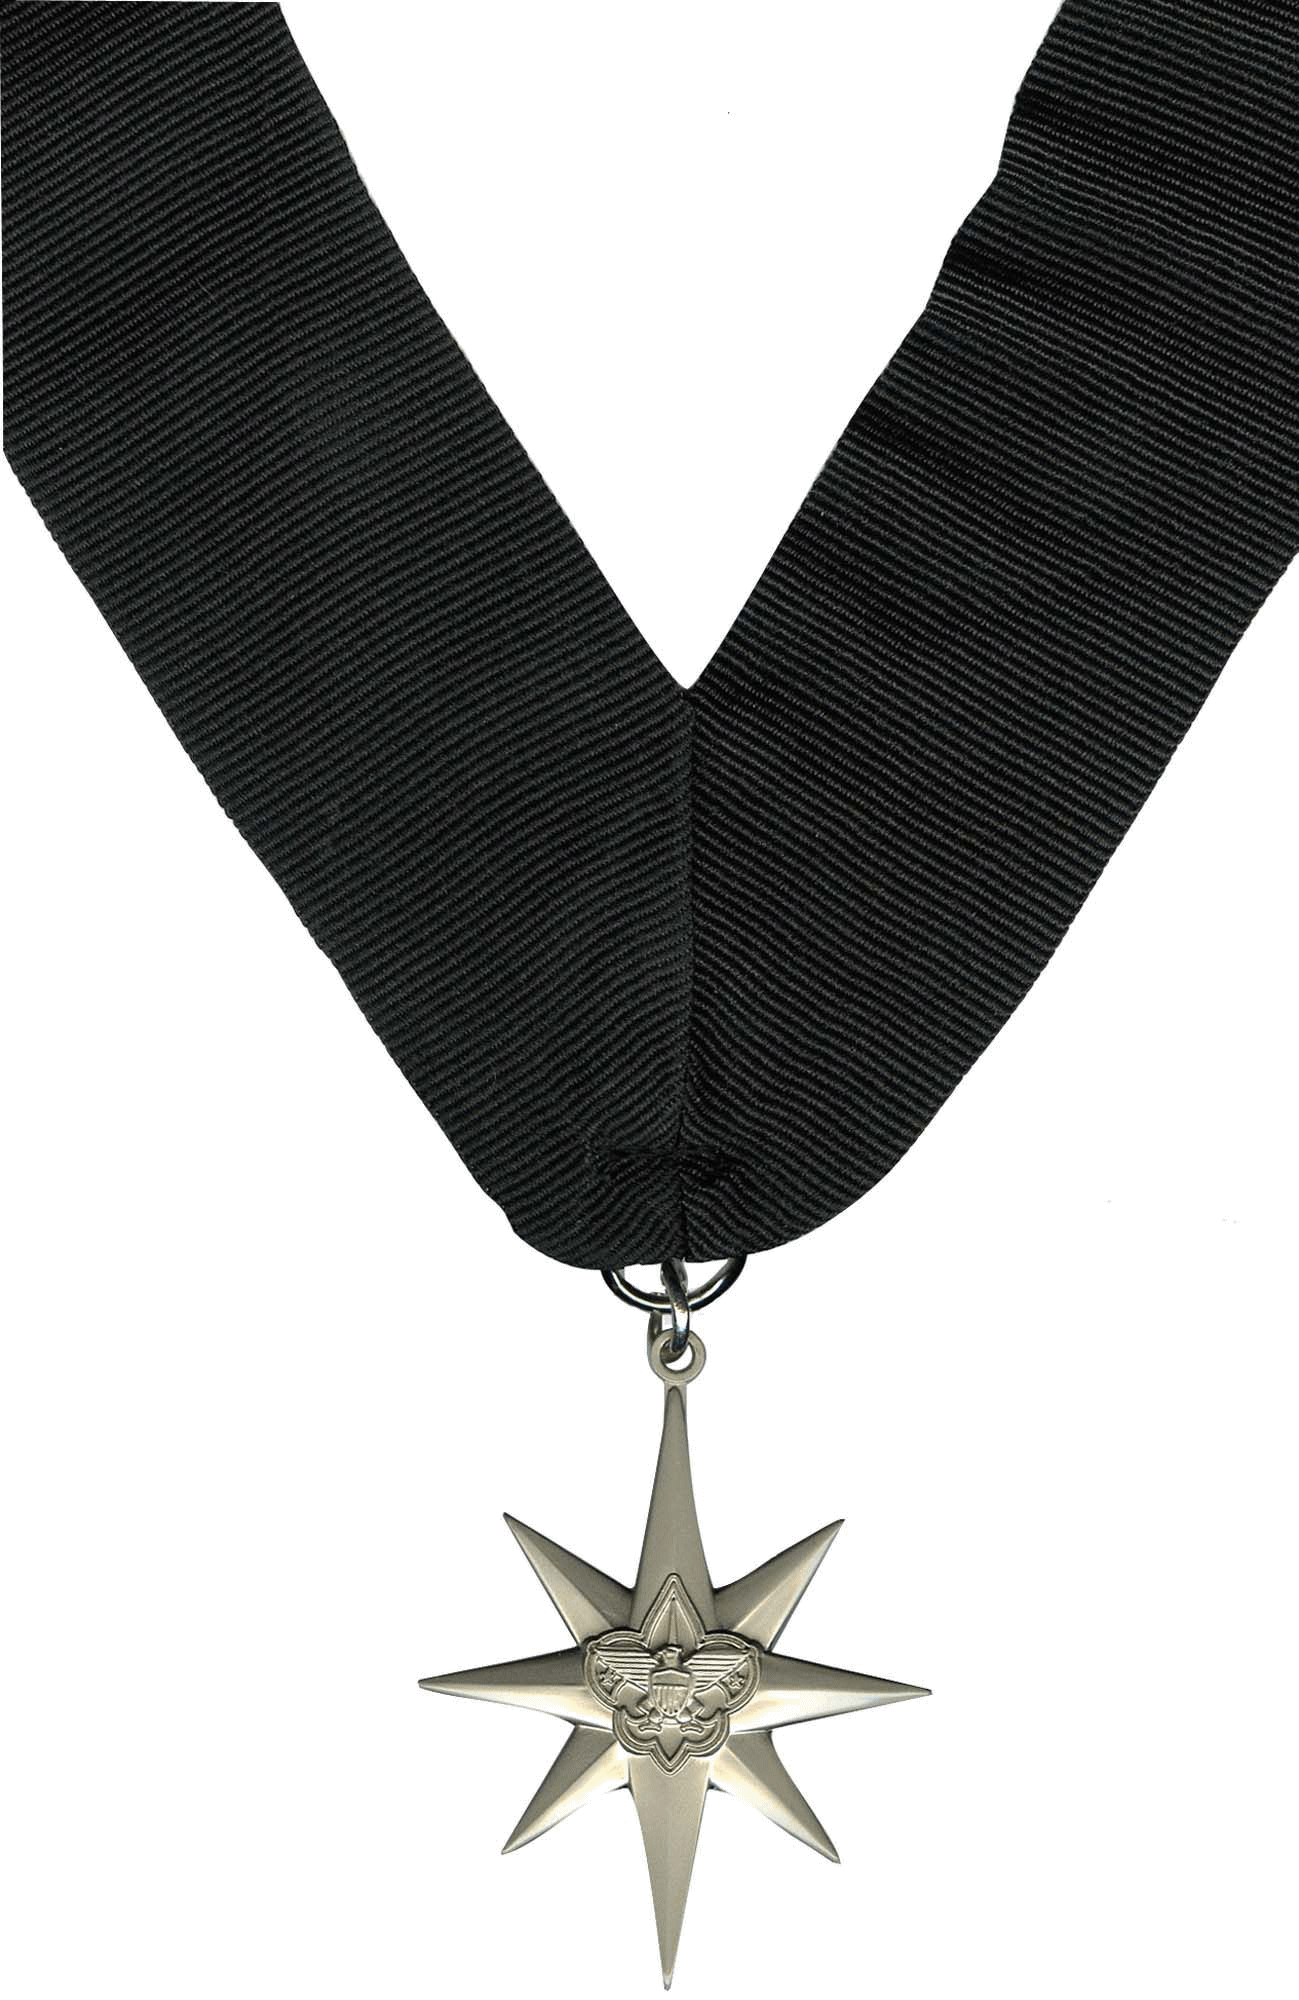 North Star Award Medal